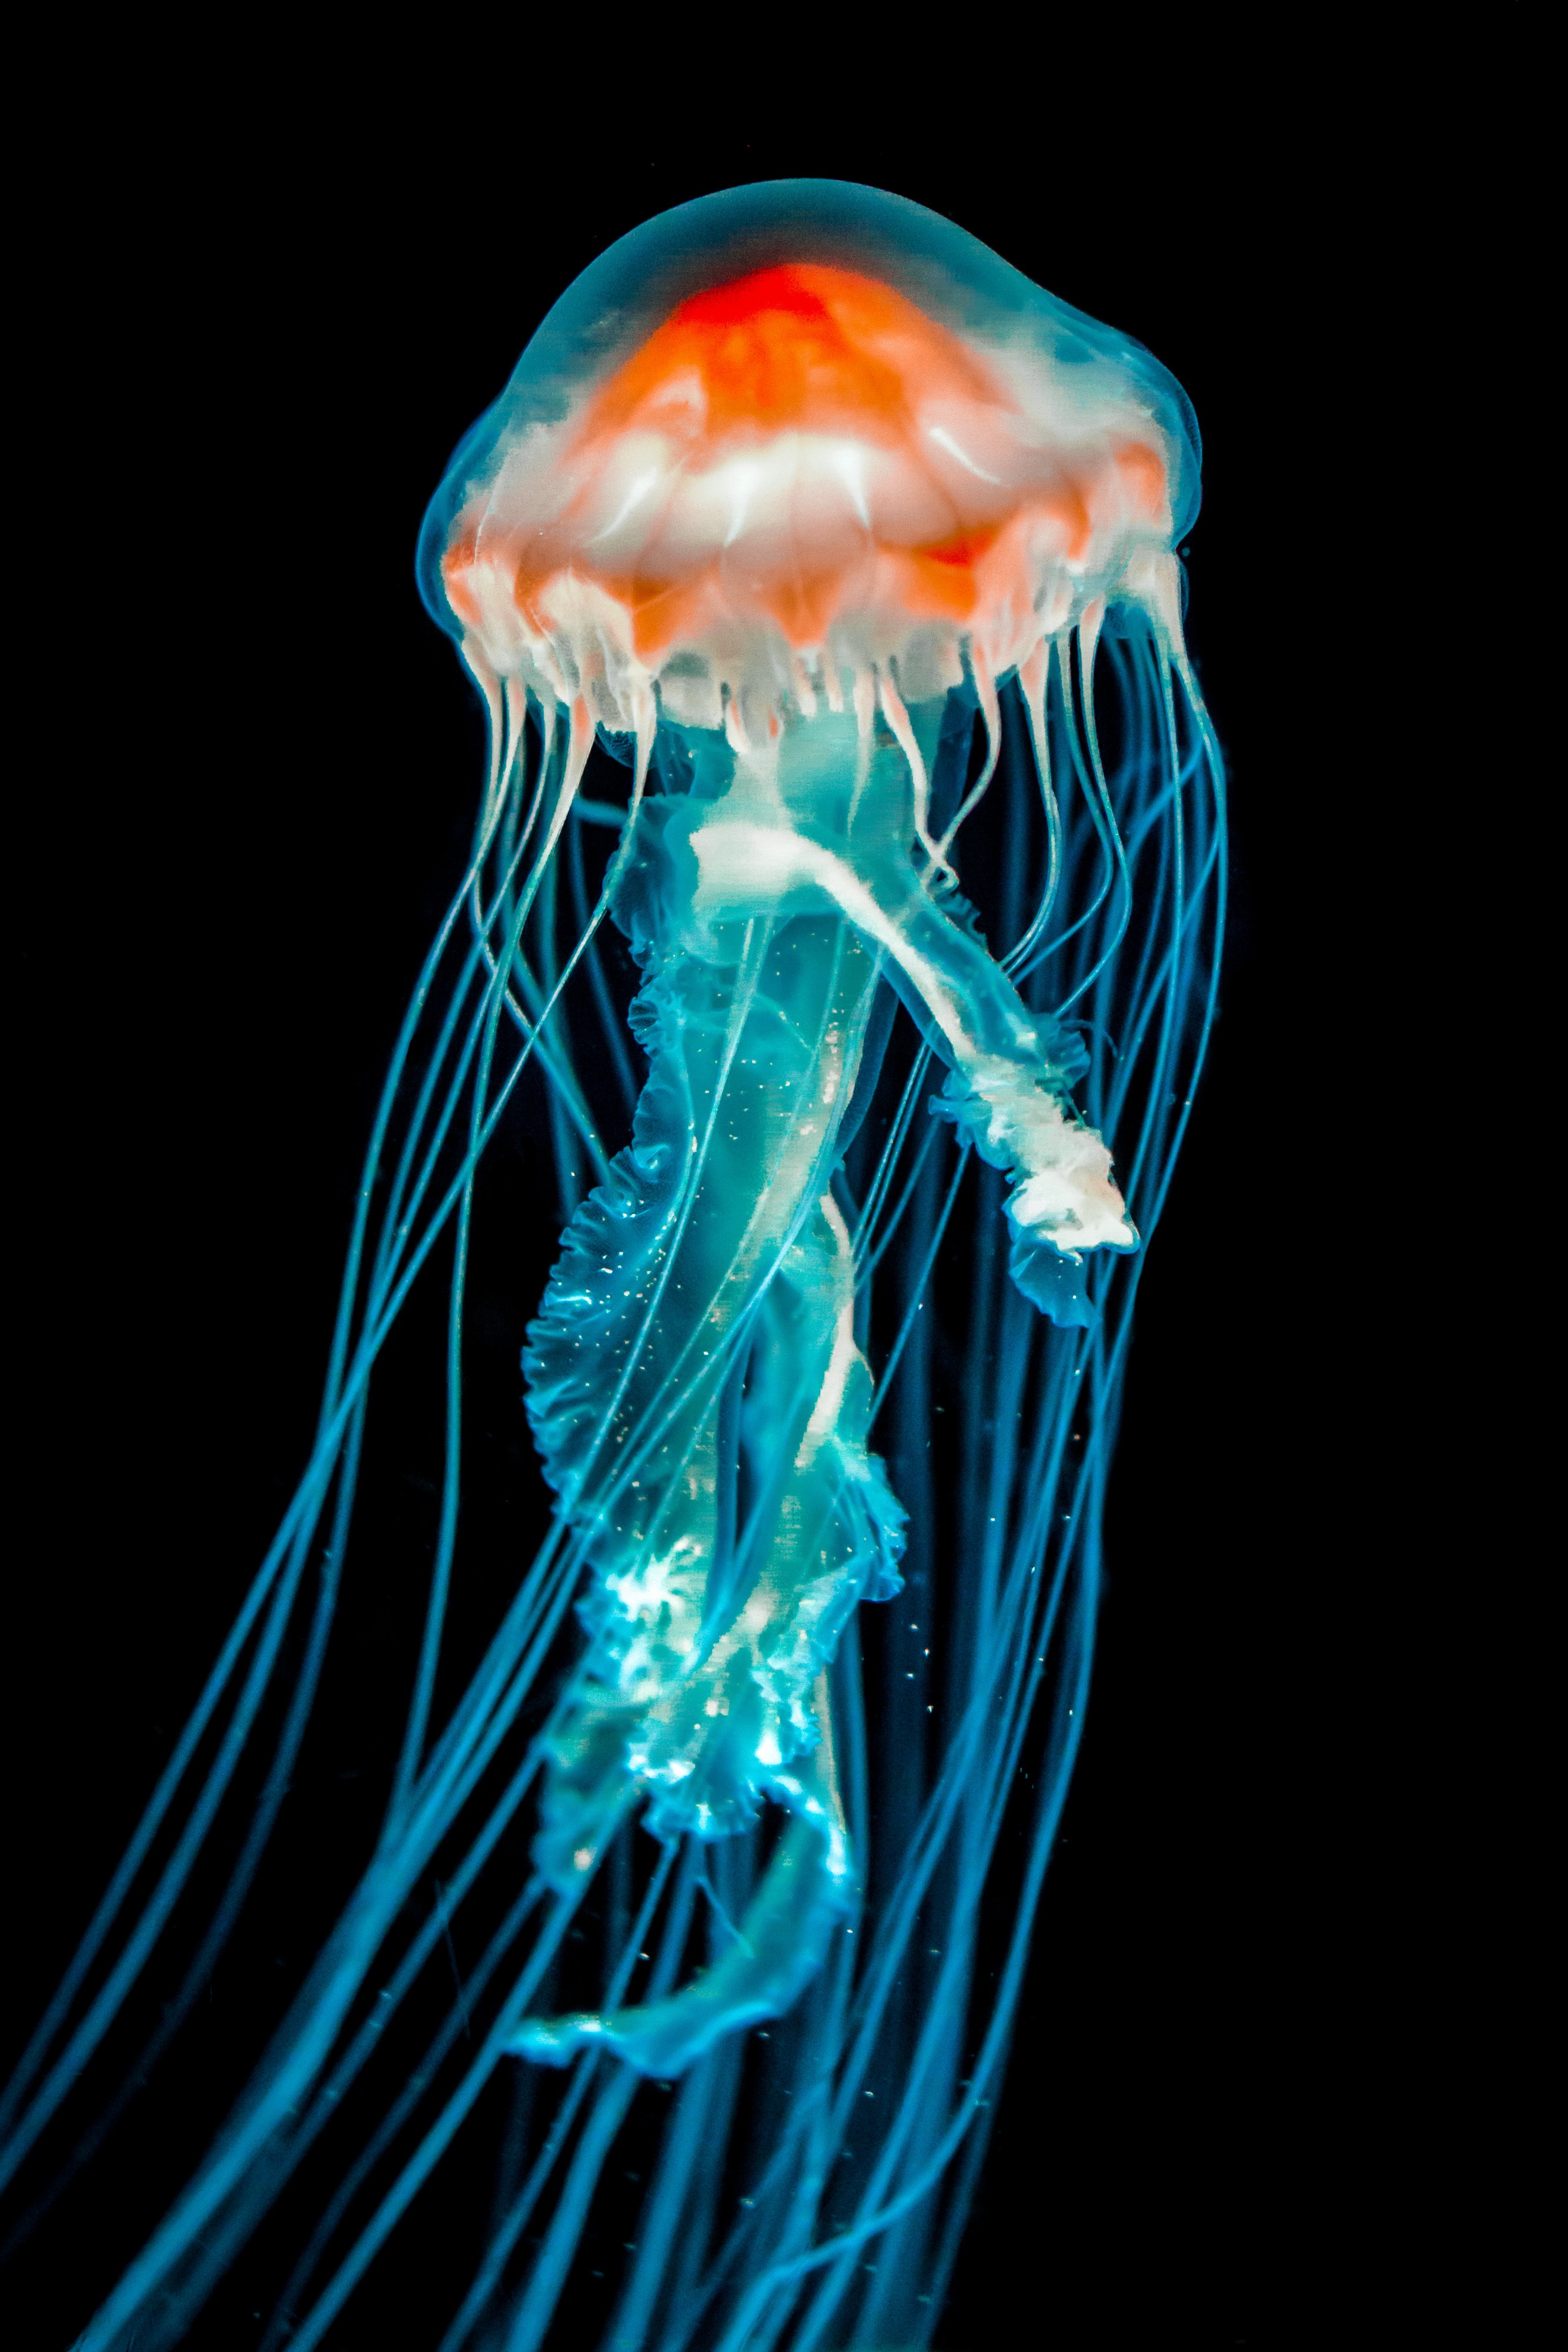 jellyfish, tentacle, dark, animals, black, underwater world Full HD